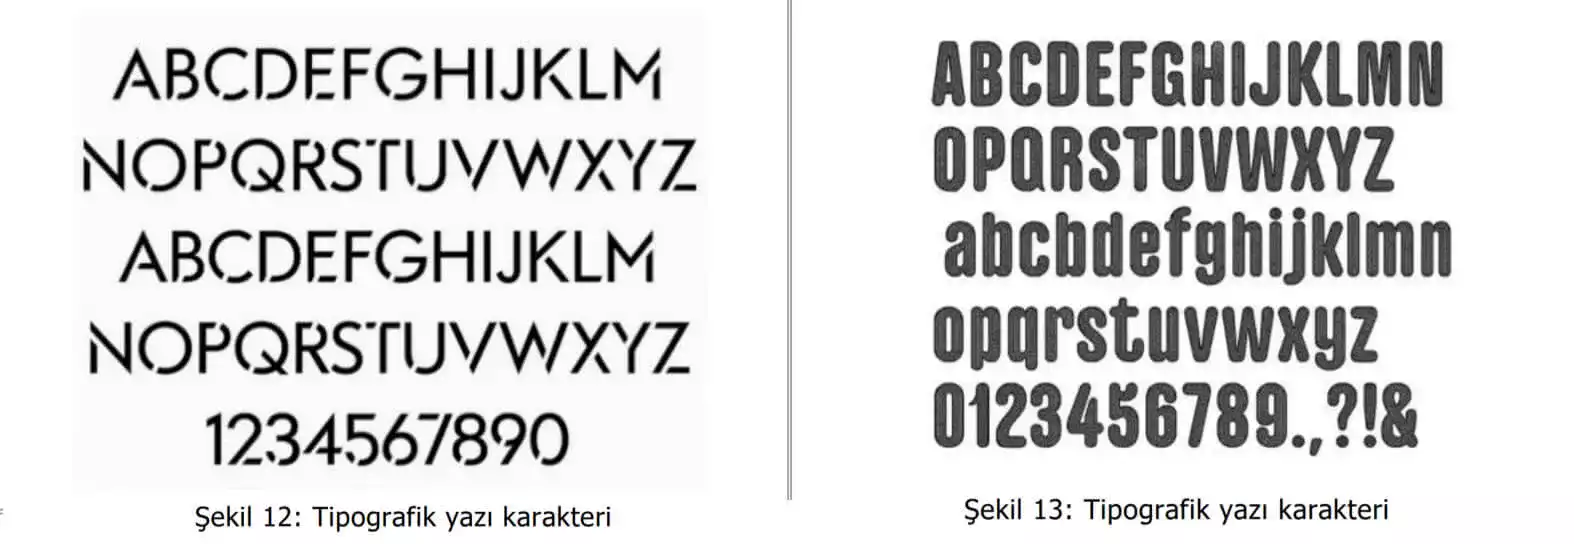 tipografik yazı karakter örnekleri-bayrampasa patent